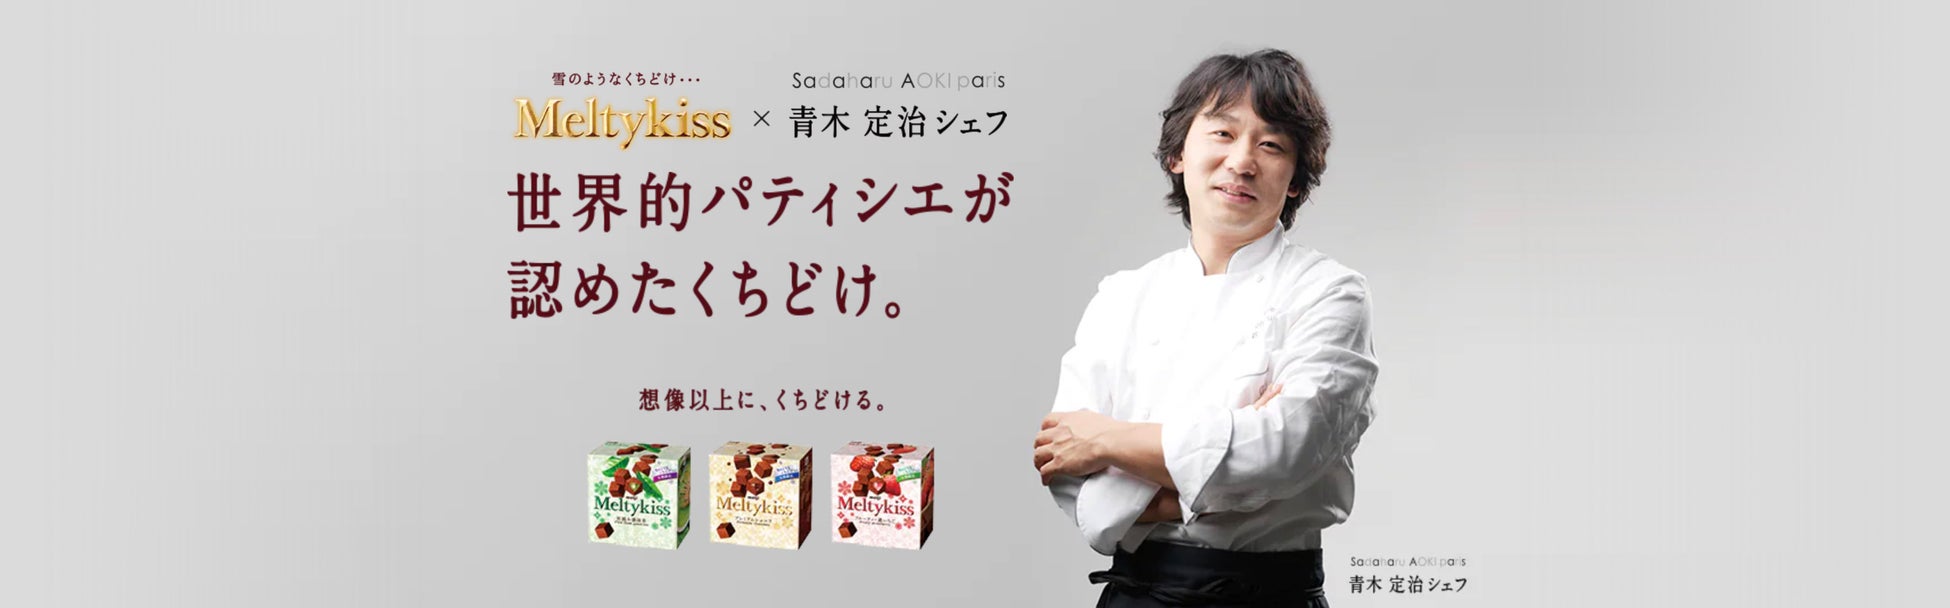 matsukiyo LAB「サステナブルロカボライン」の主食カテゴリが拡充低糖質ライフでの炭水化物の欲求を満たす「おかゆ」１月11日に販売開始